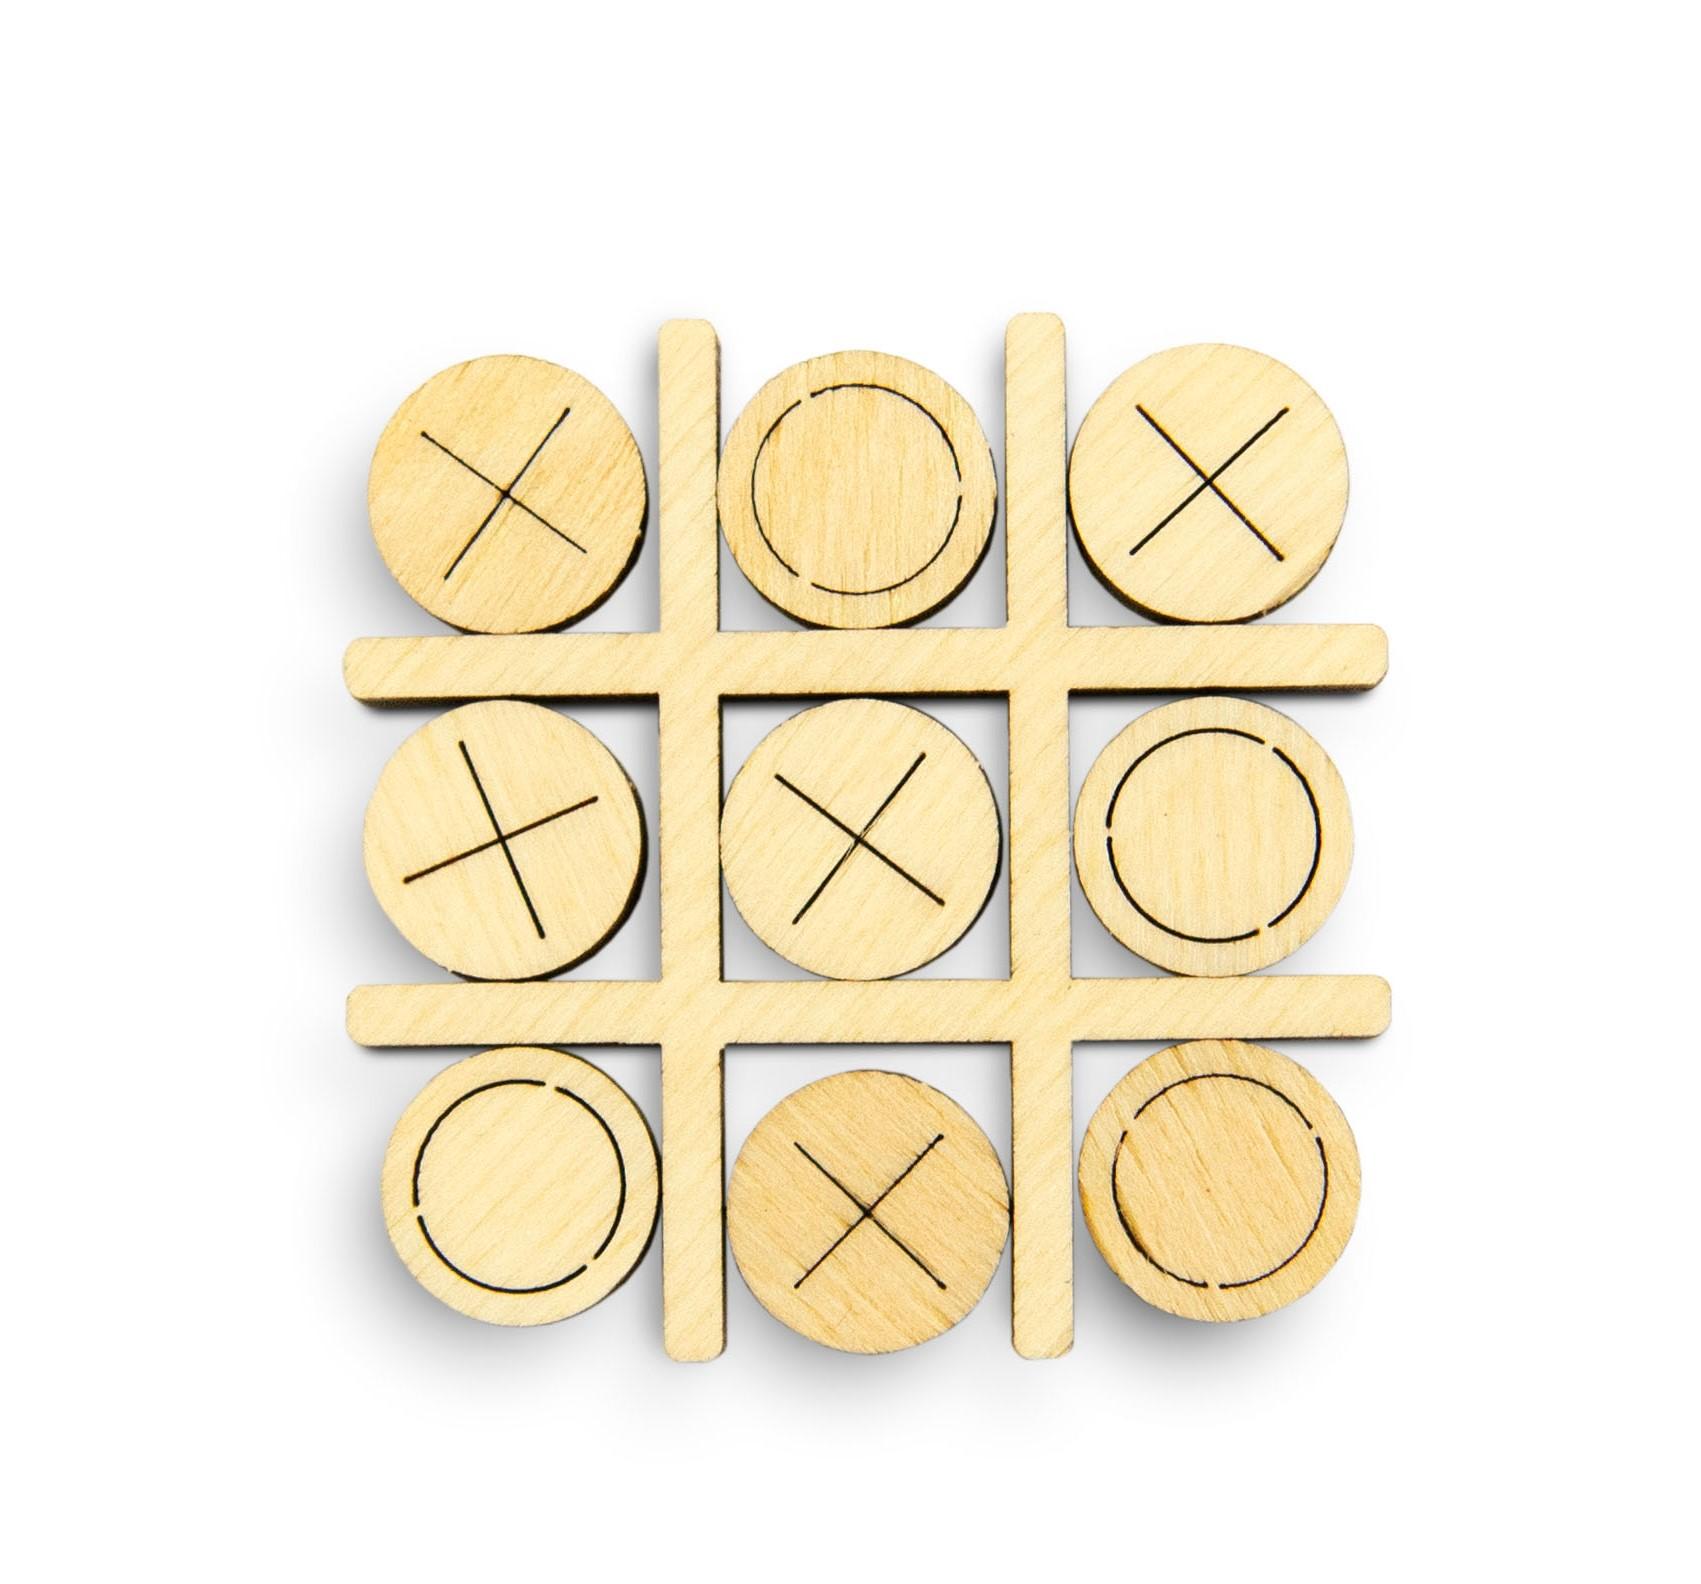 Wooden 3D Puzzle - Tic-Tac-Toe Game No. 2